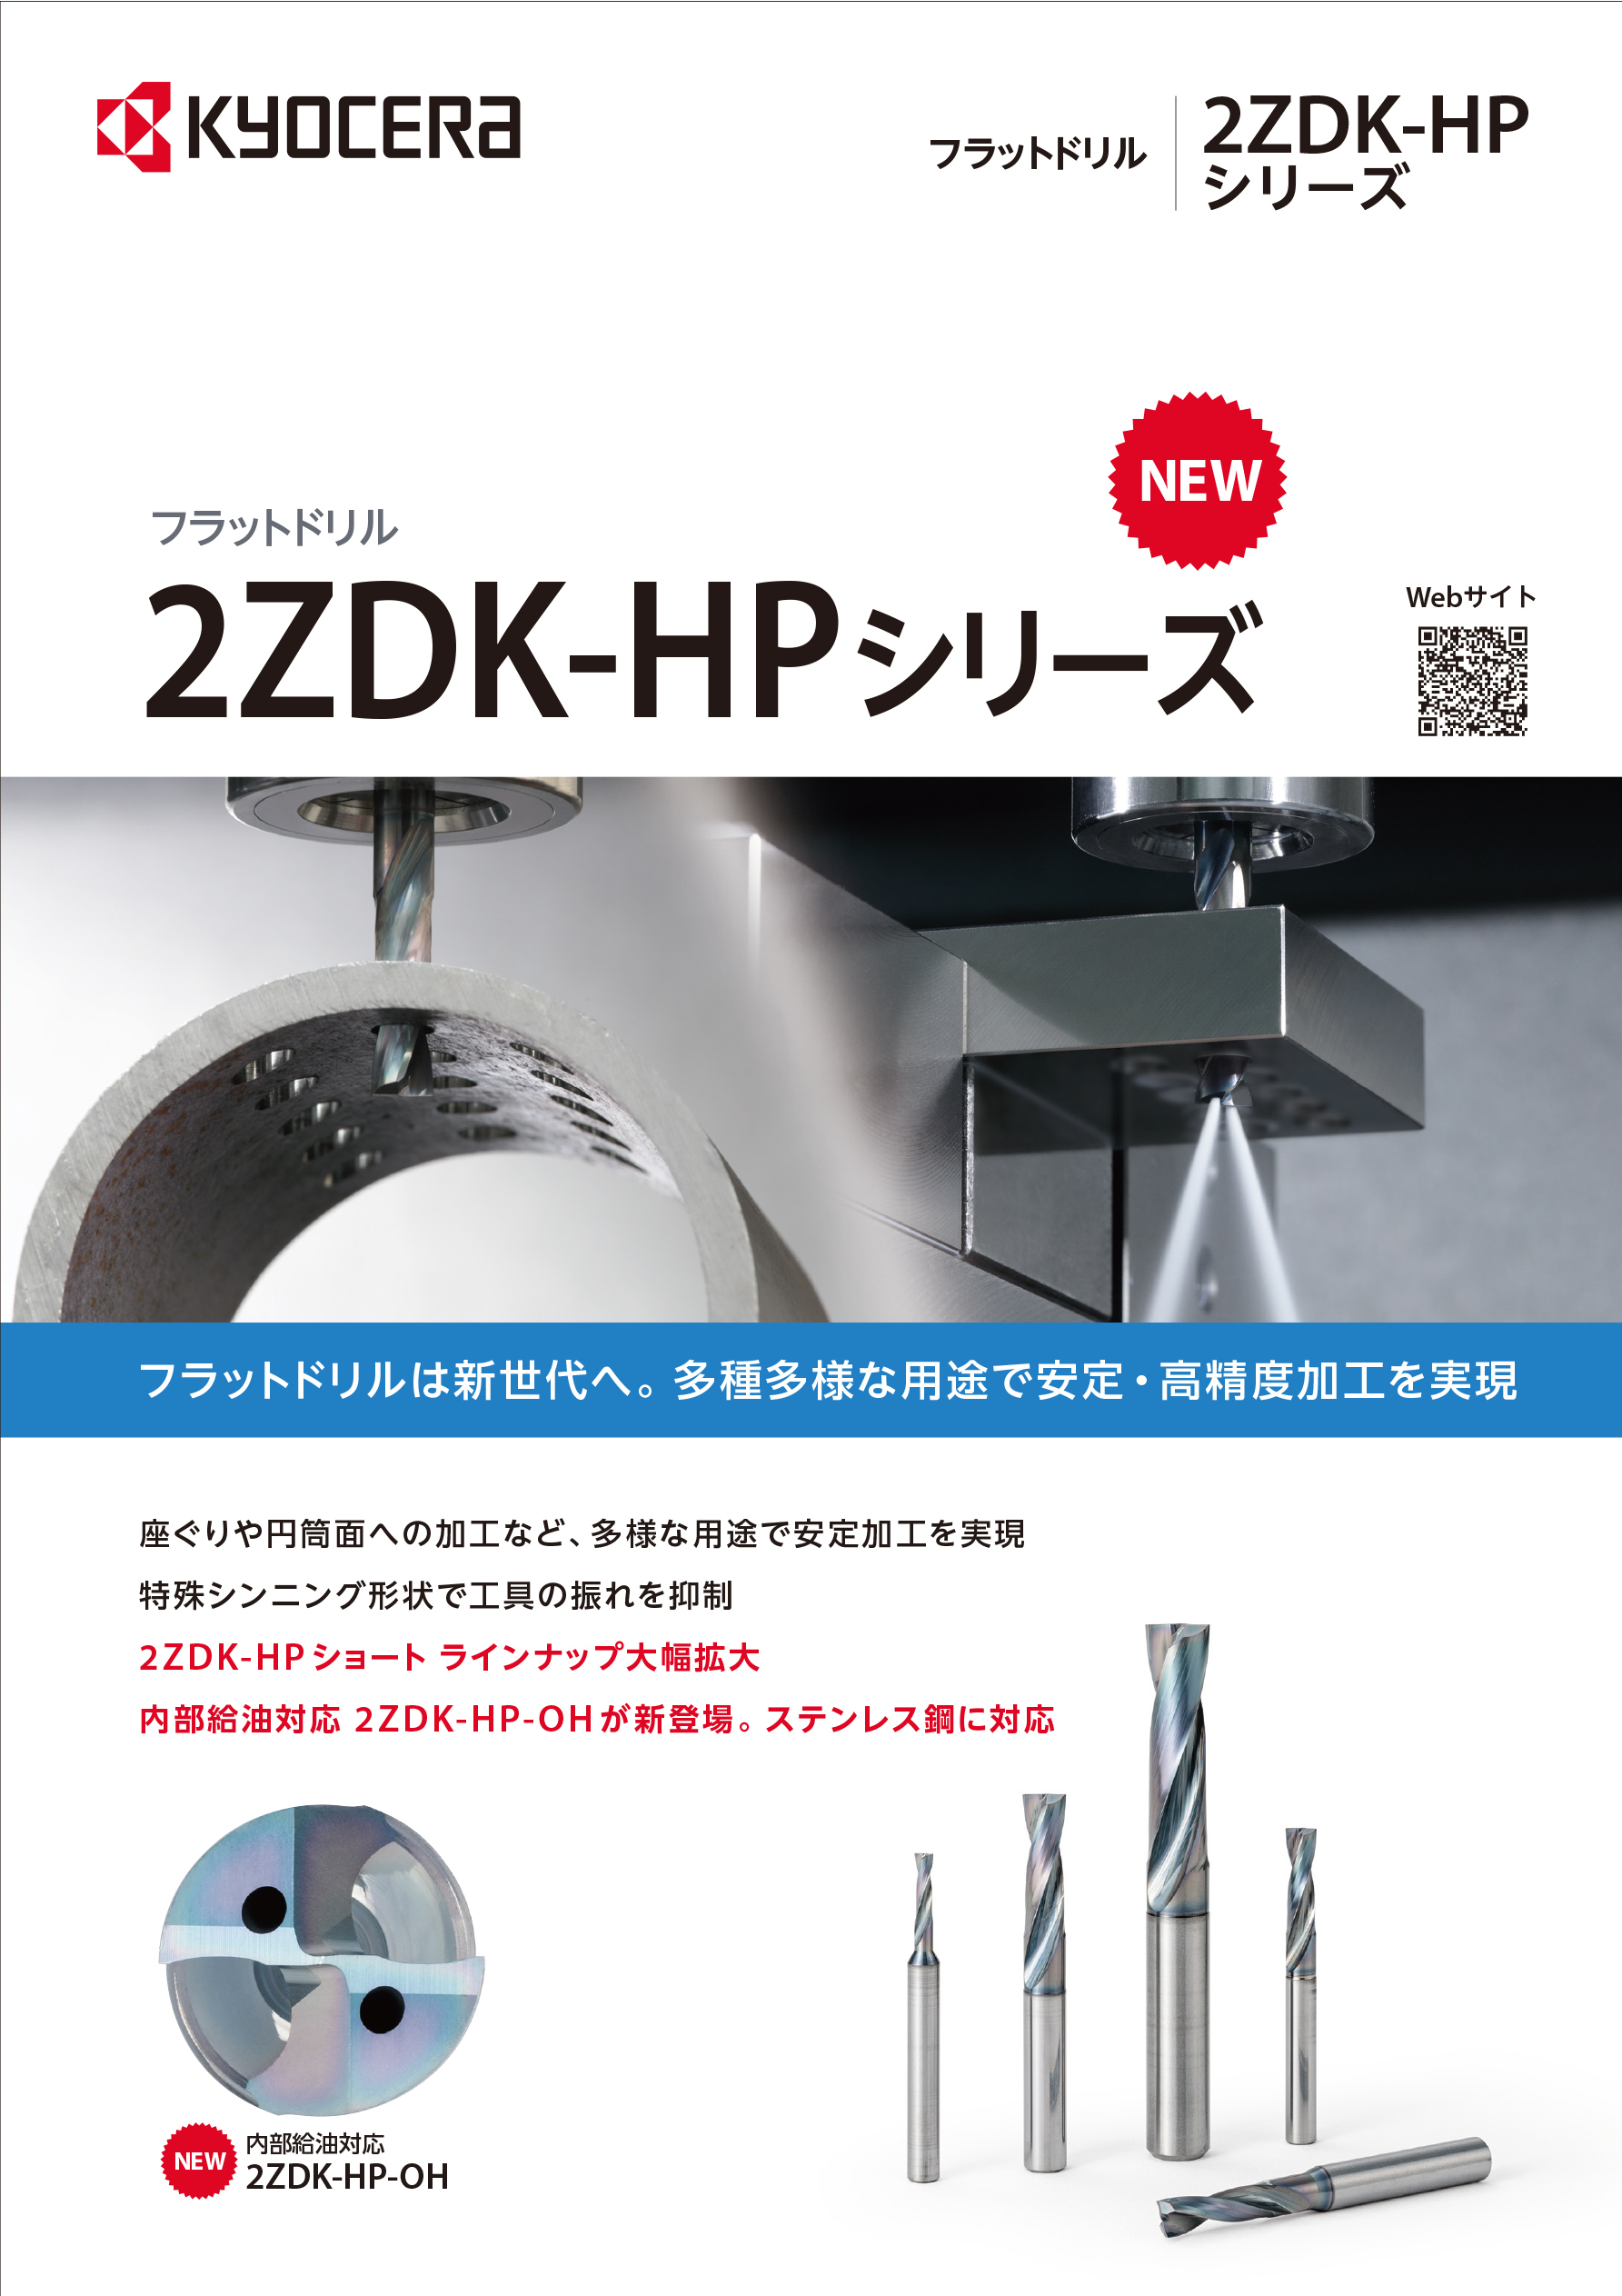 CP431-1_2ZDK-HP-OH.jpg